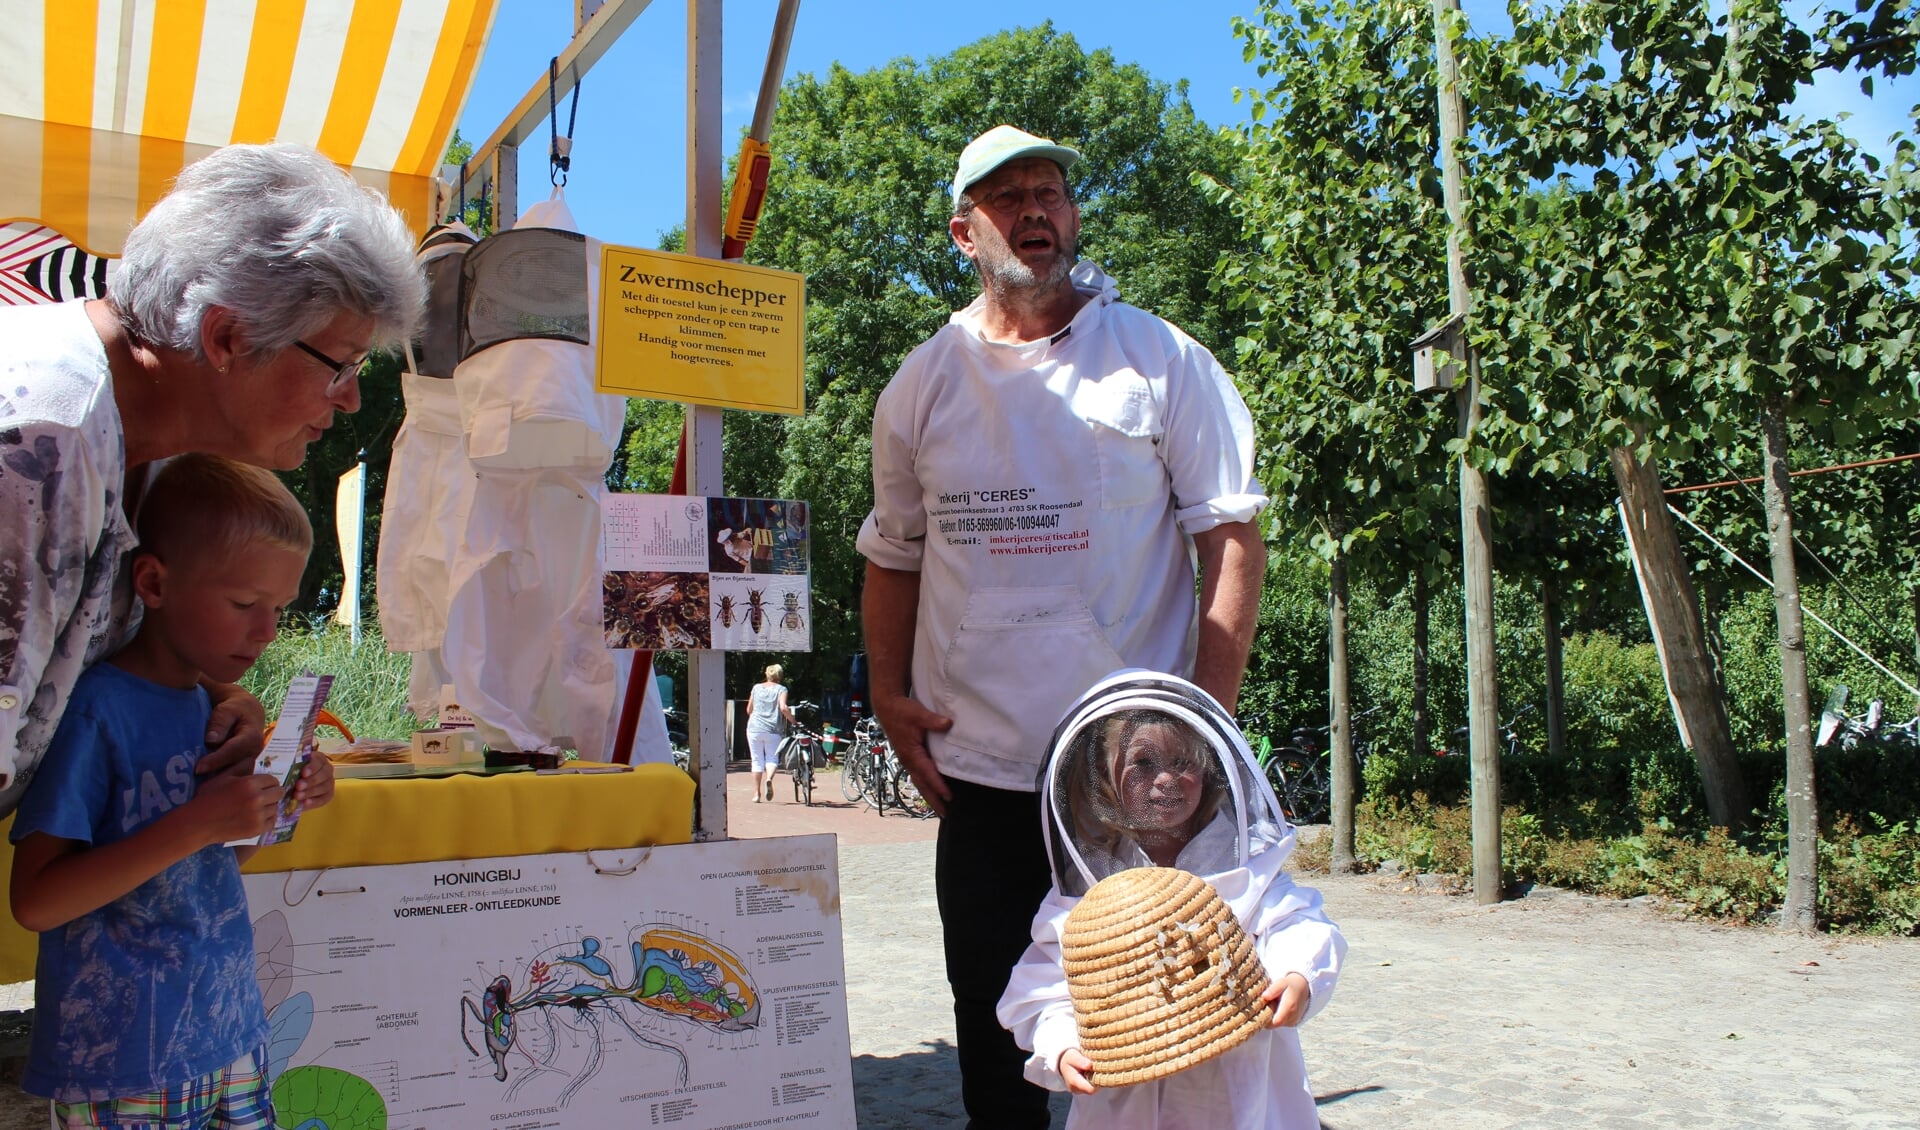 Jayda uit Steenbergen (2,5 jaar) behoort wellicht tot de nieuwe generatie imkers om bijen te laten bestuiven in de toekomst